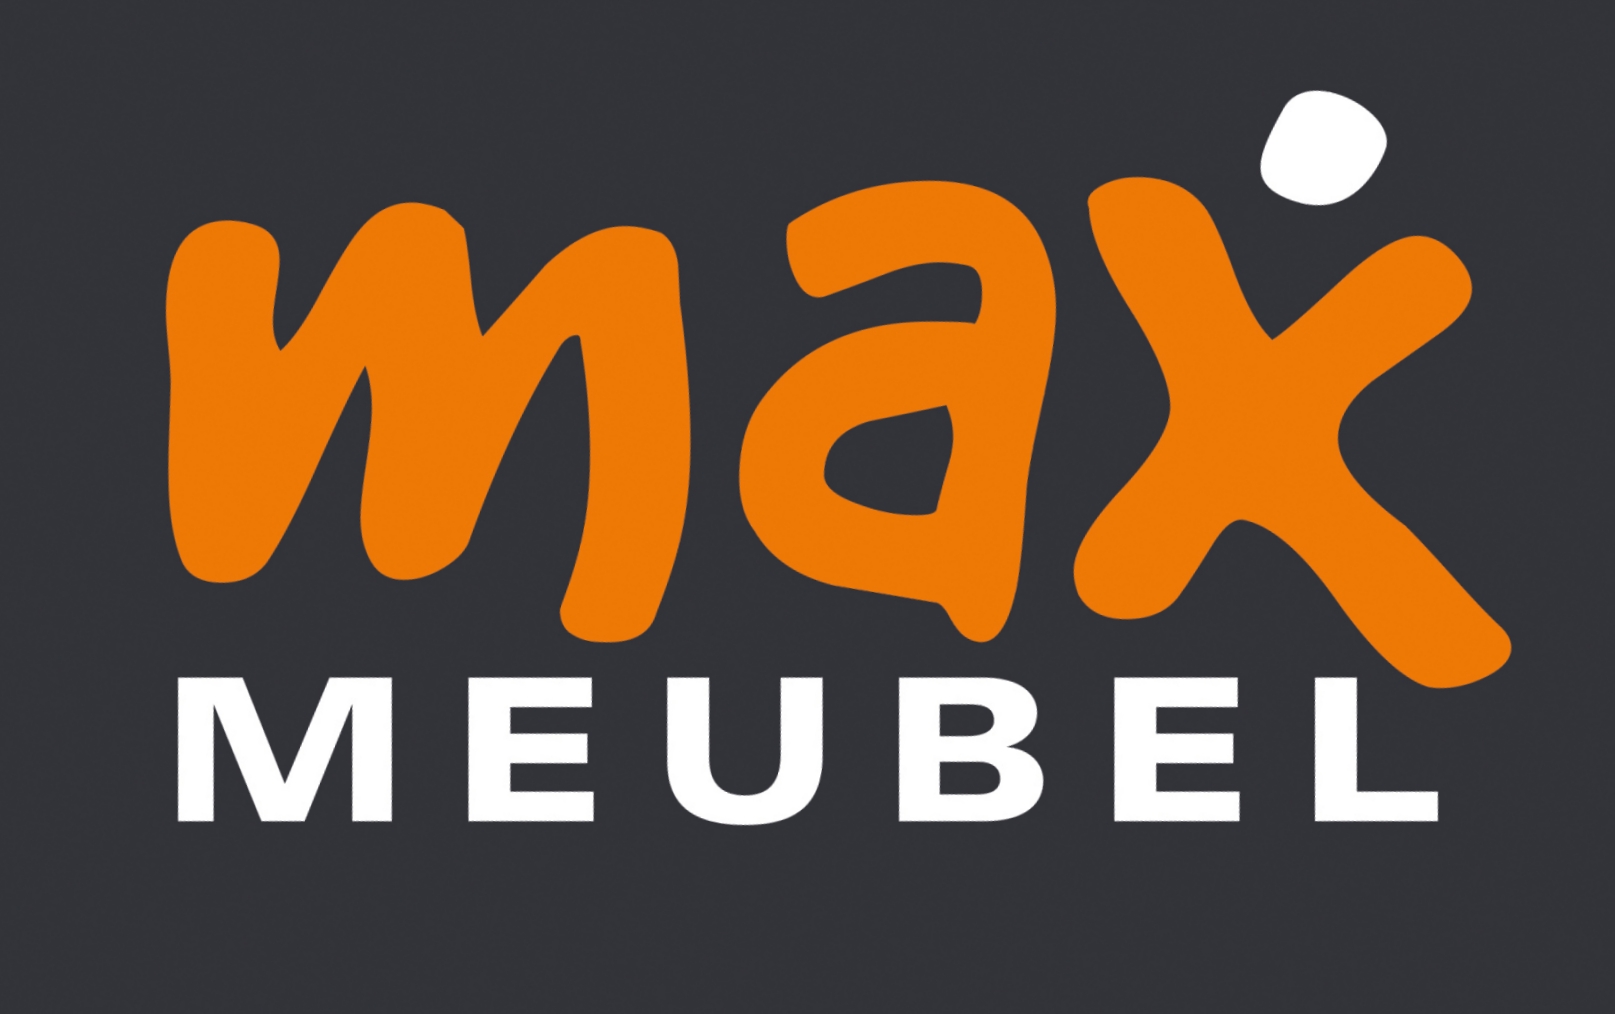 Max Meubel